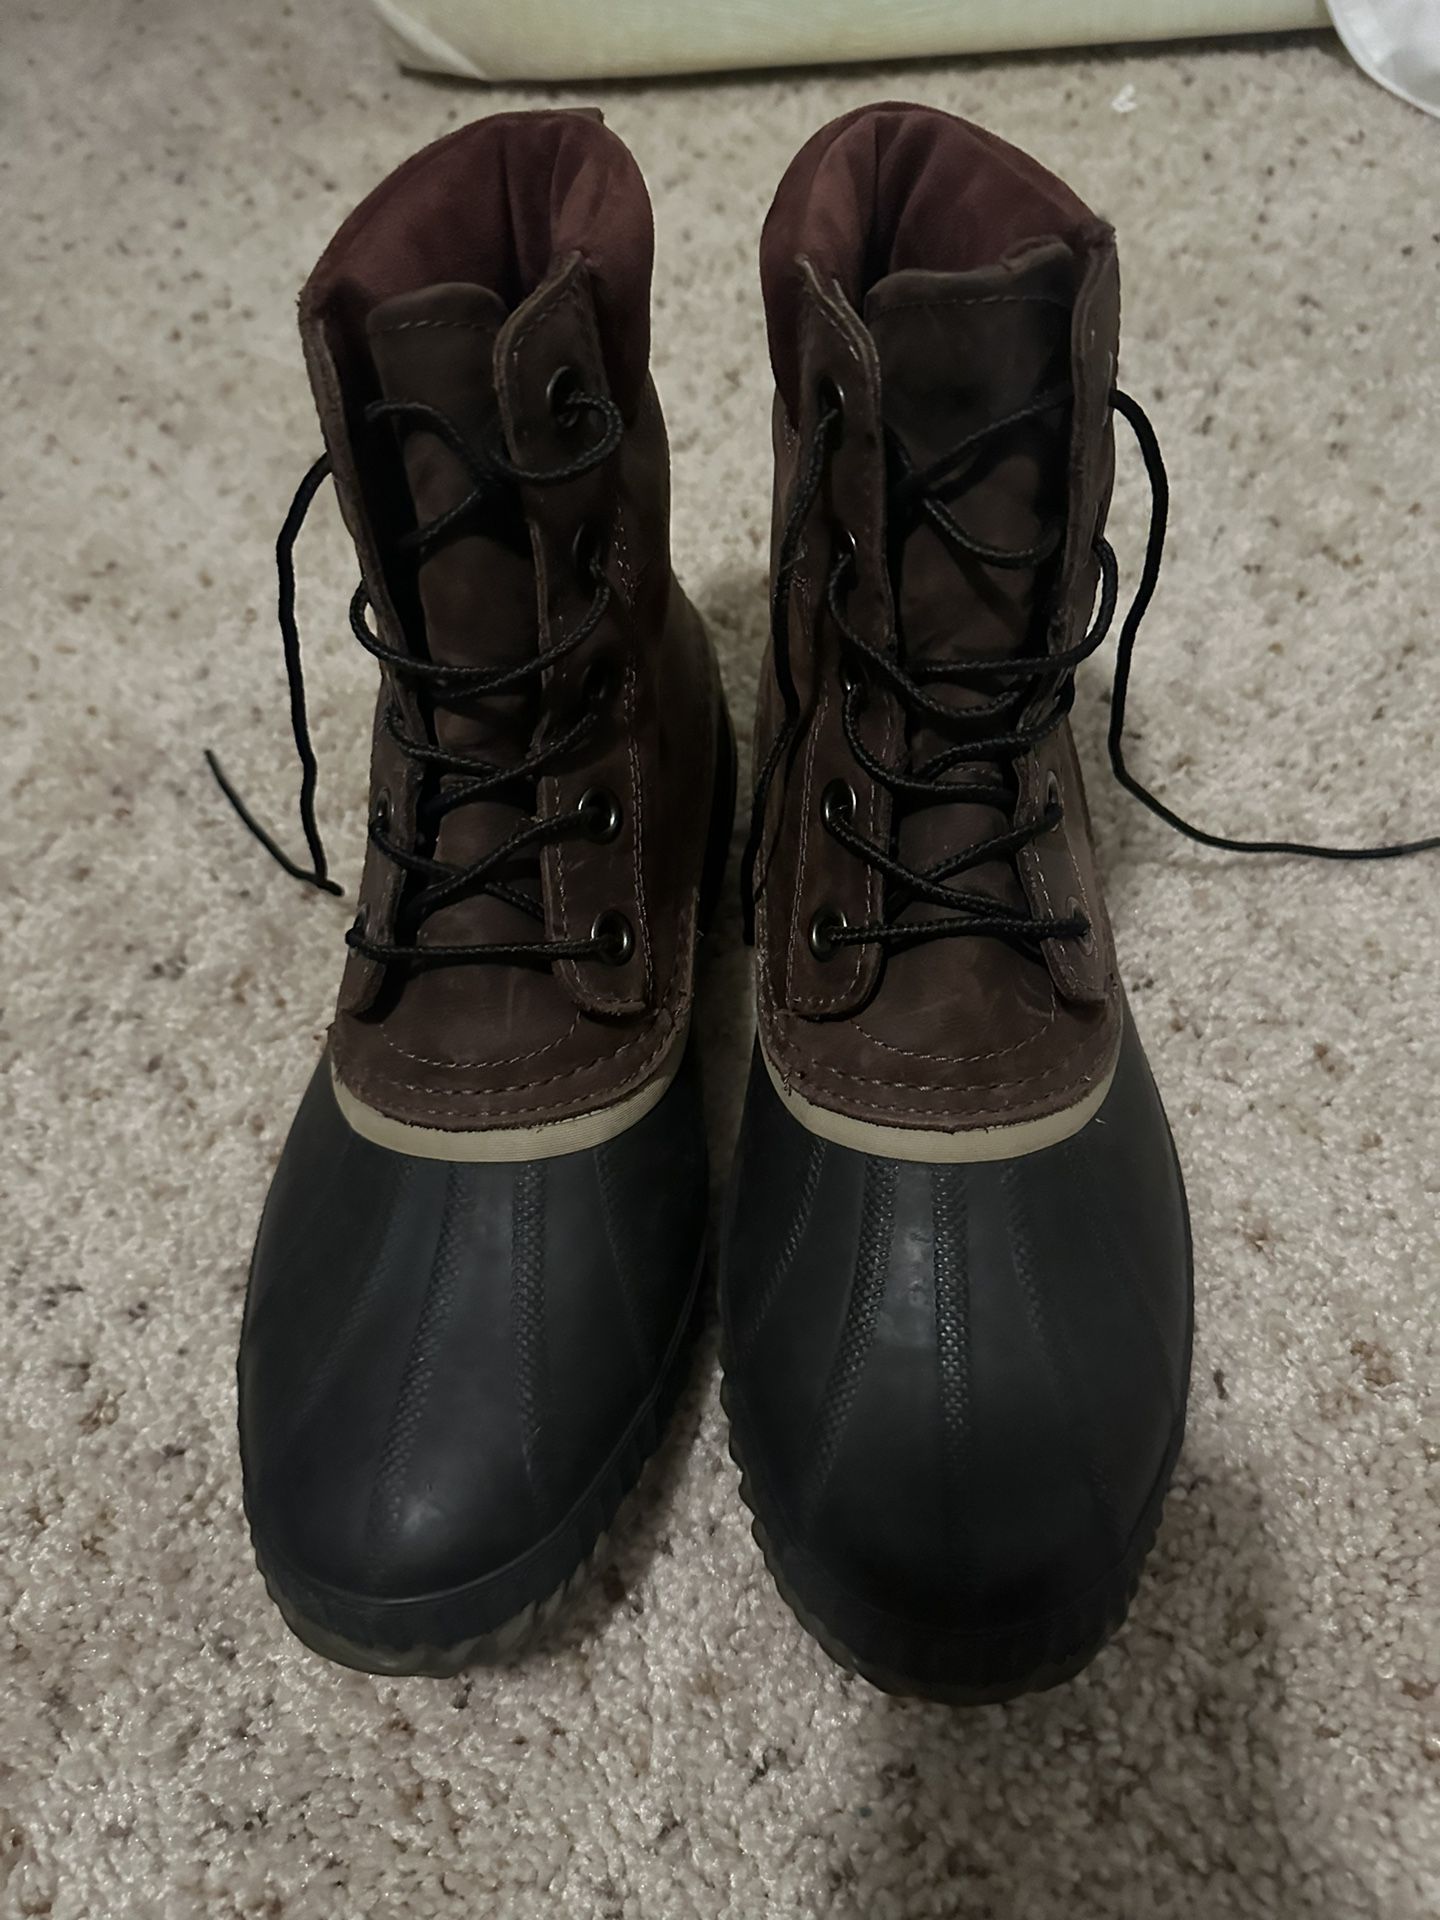 Sorel Men’s Boots Size 9